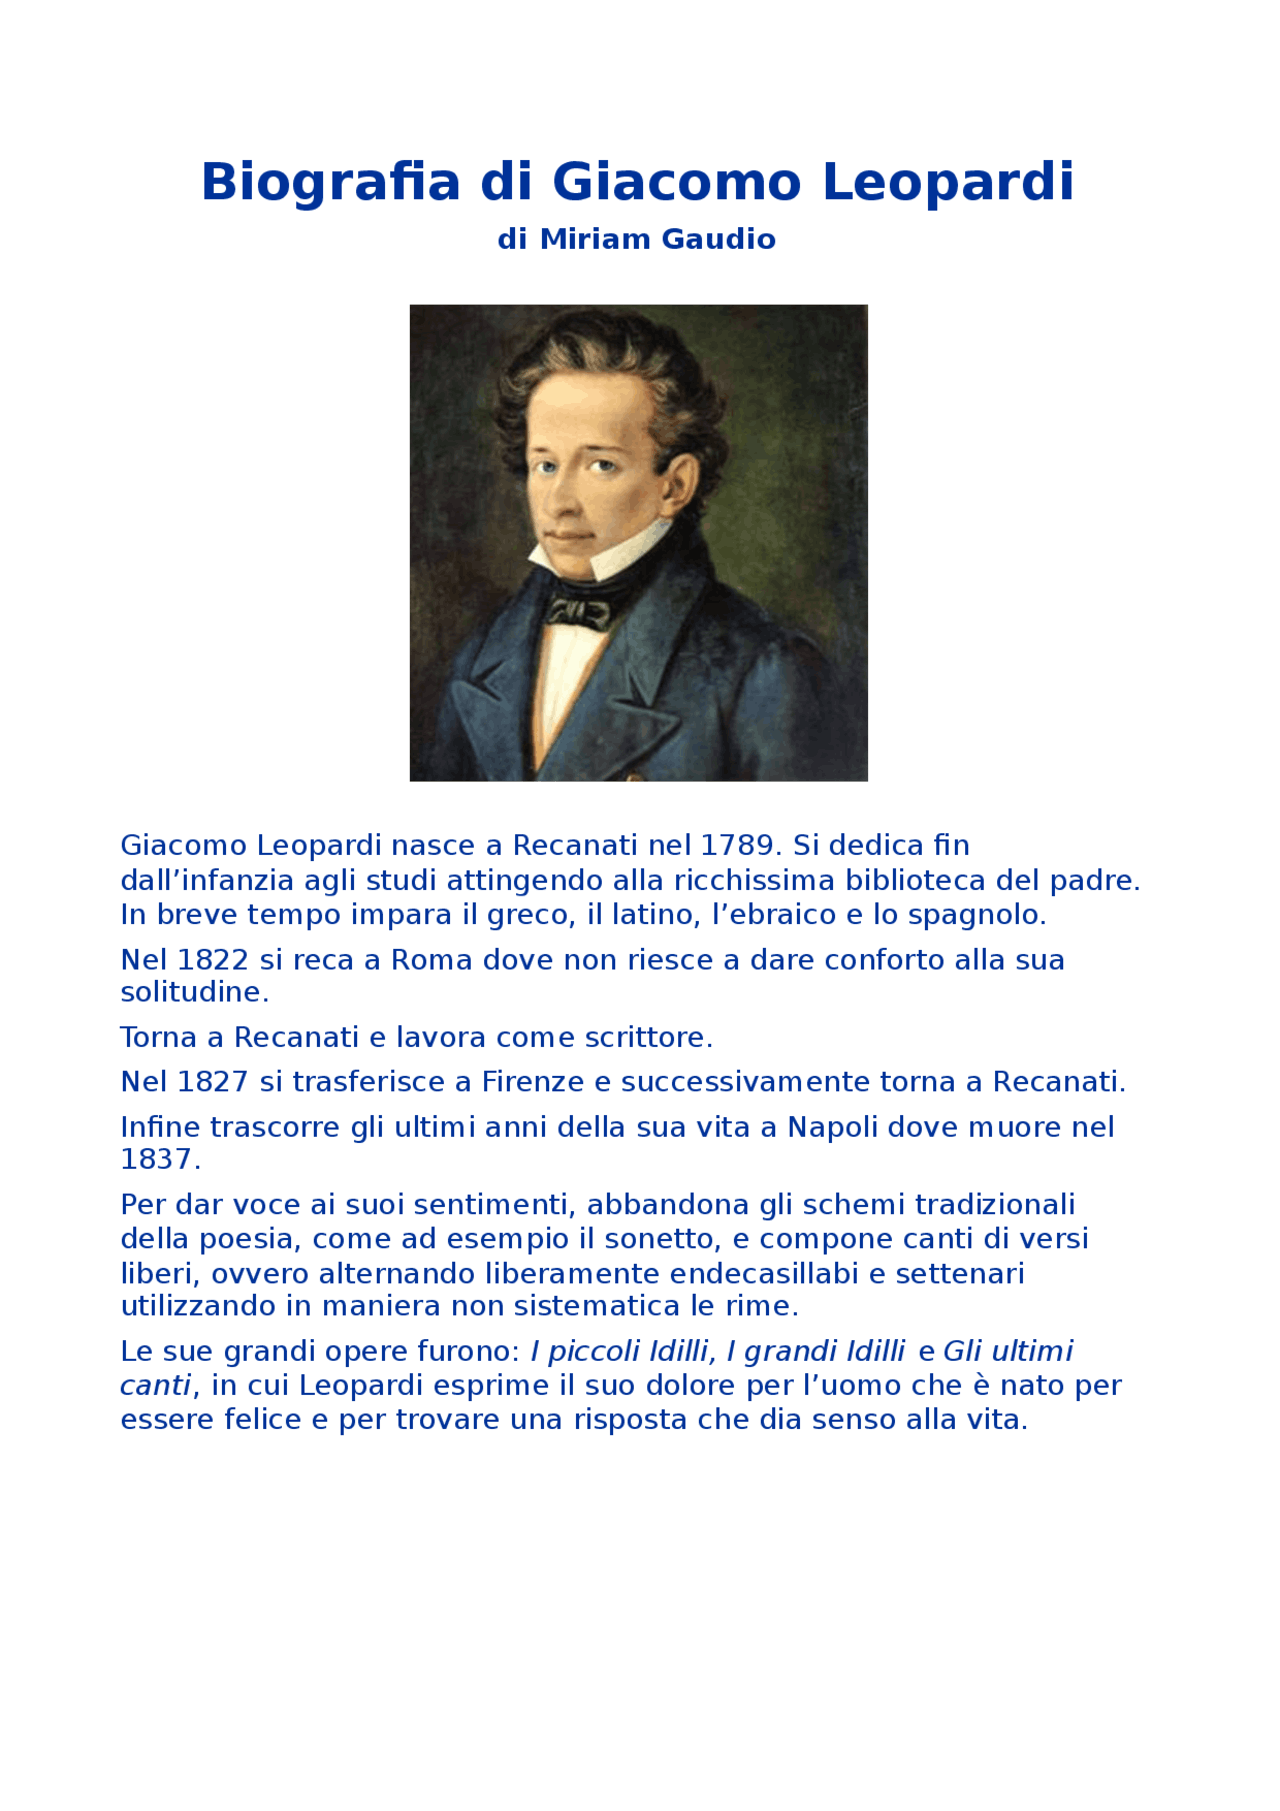  Biografia de Giacomo Leopardi